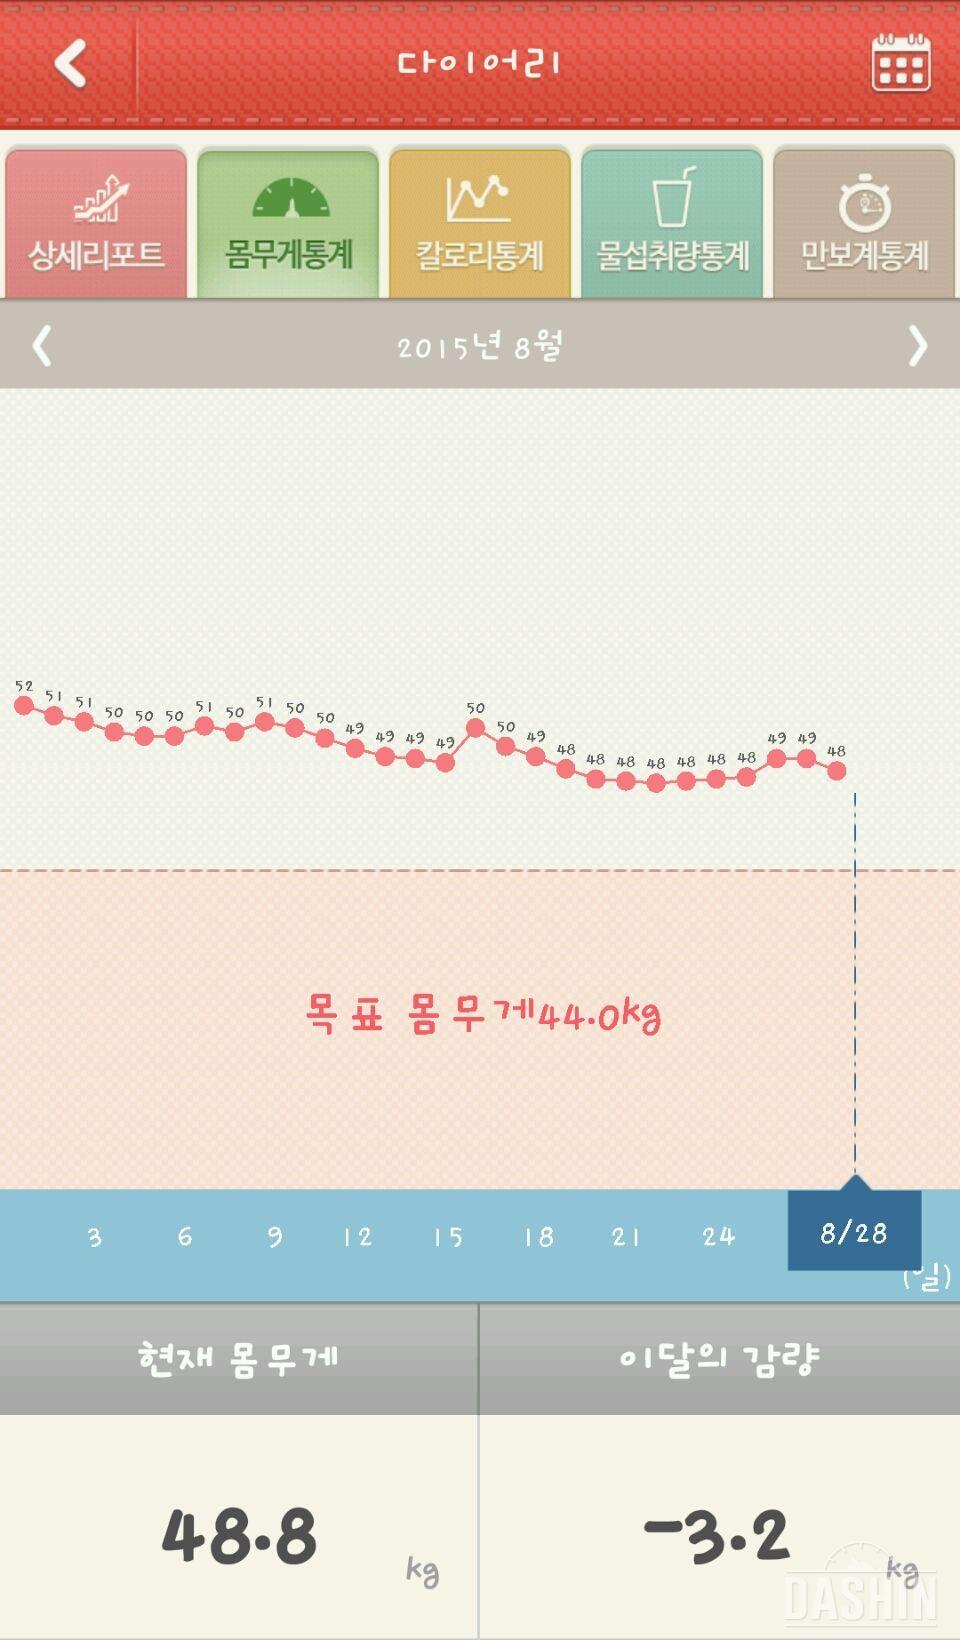 8월 한달 다이어트 끝~~!